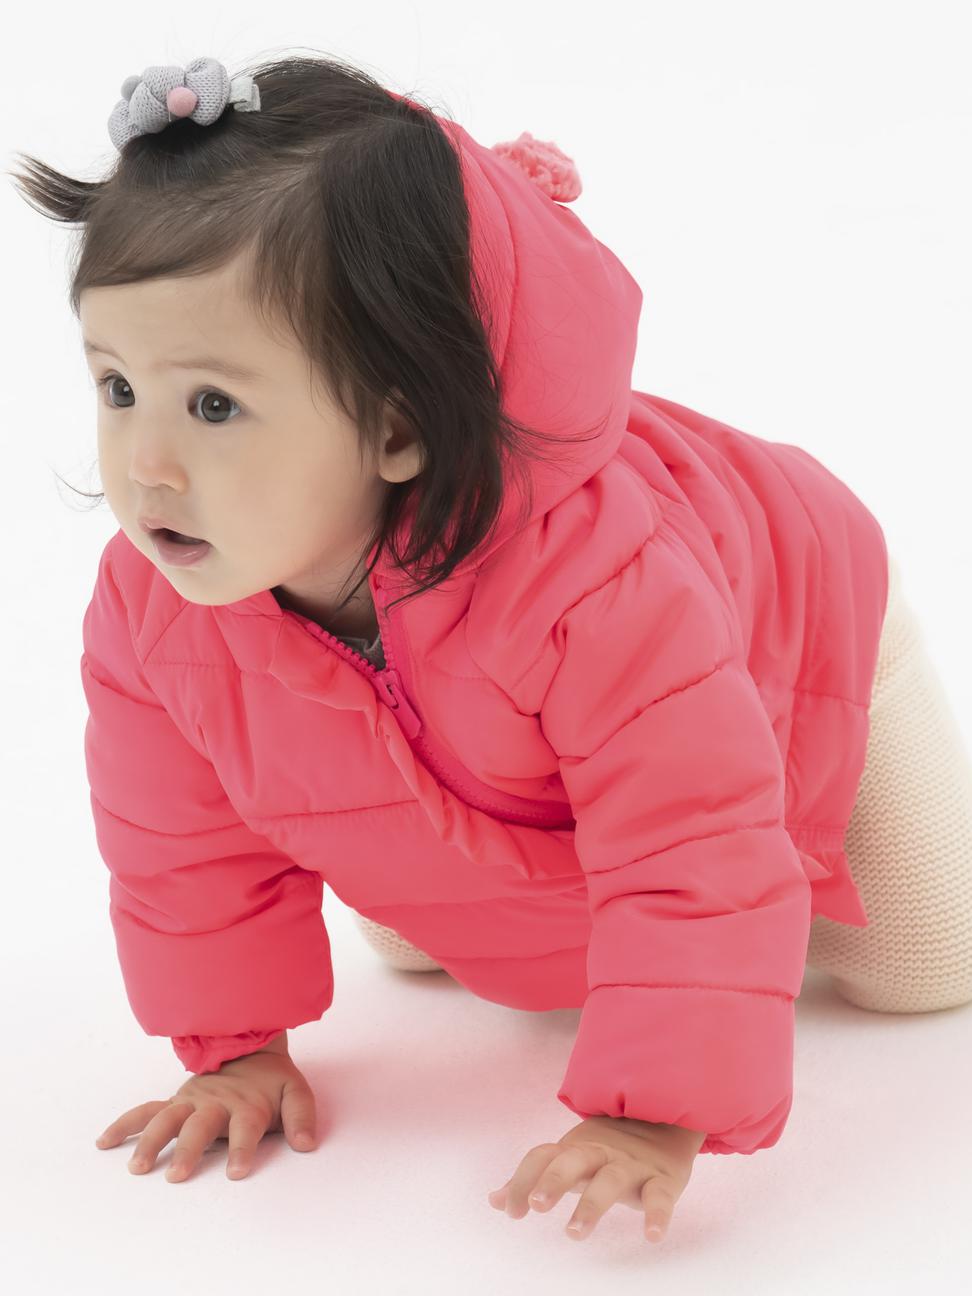 嬰兒裝|童趣熊耳保暖外套-淺色粉